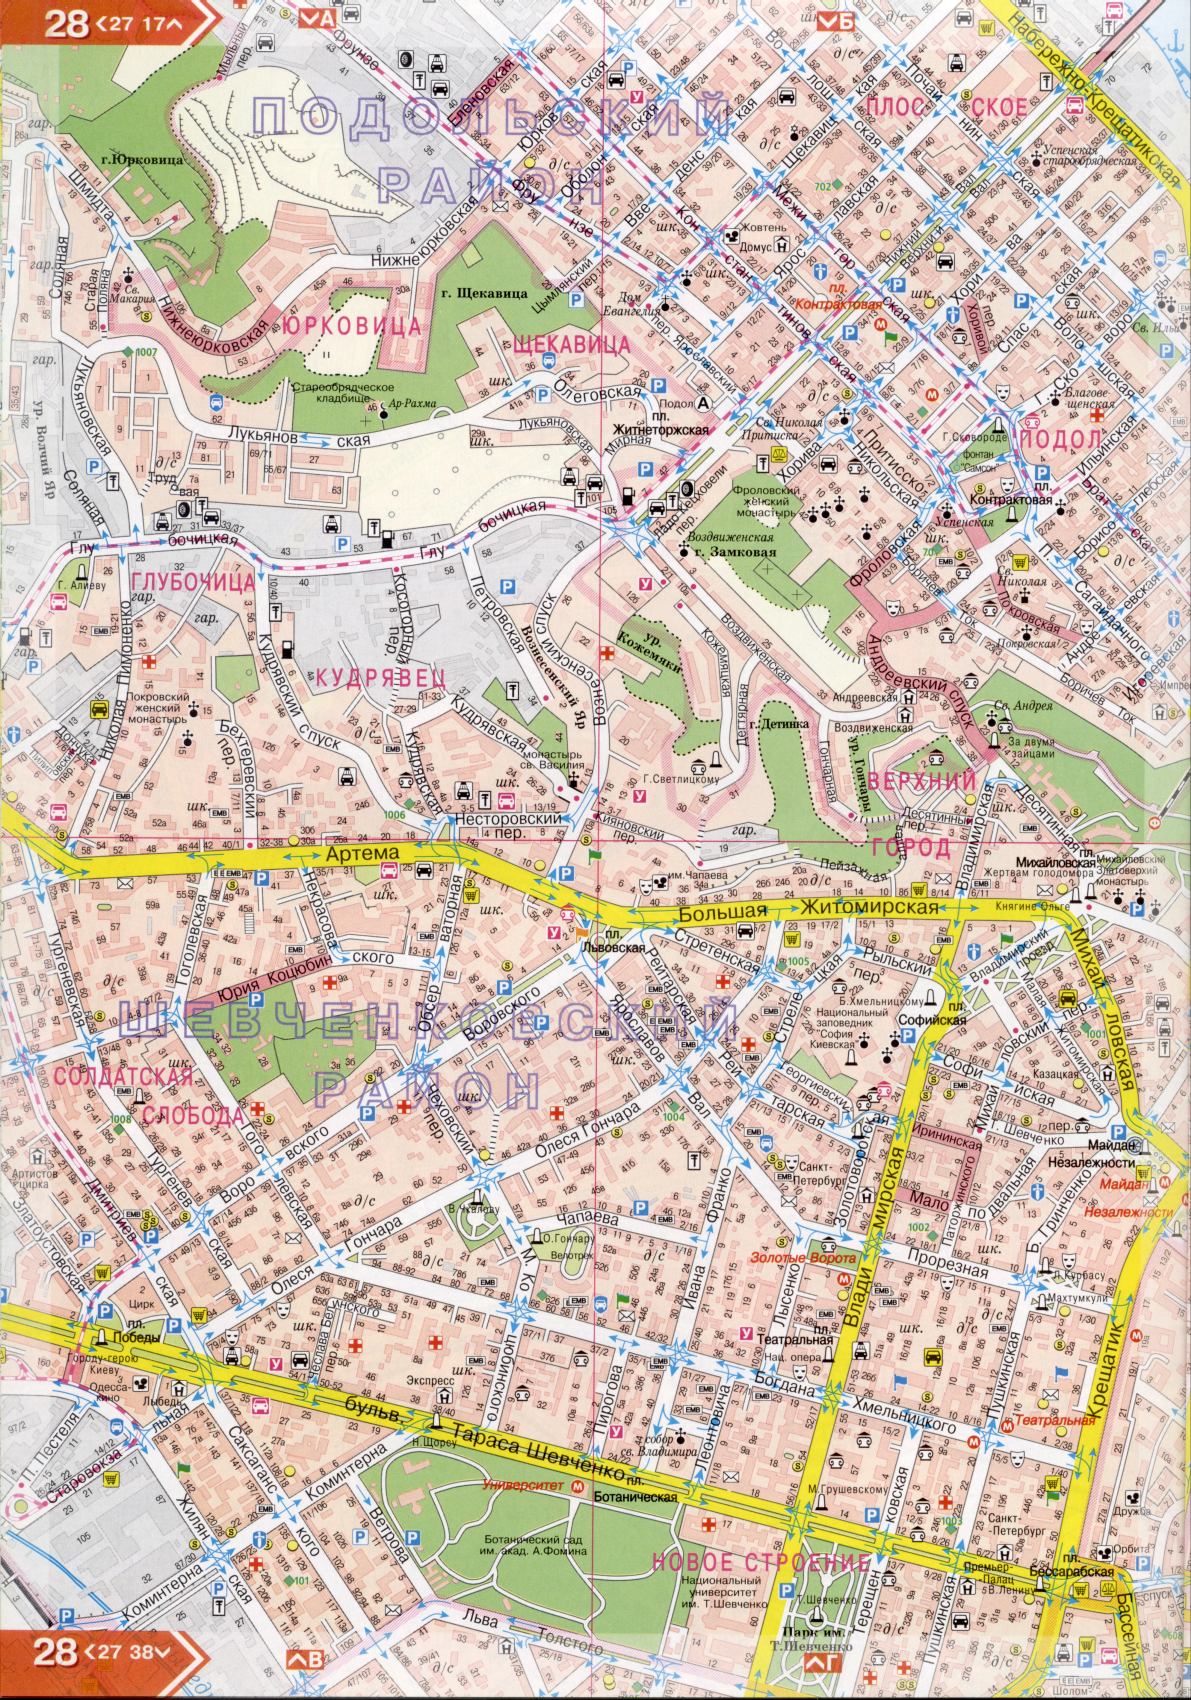 Kiev carte détails 1cm = 150m pour 45 feuilles. Carte de Kiev de l'atlas des routes. Télécharger une carte détaillée, E2